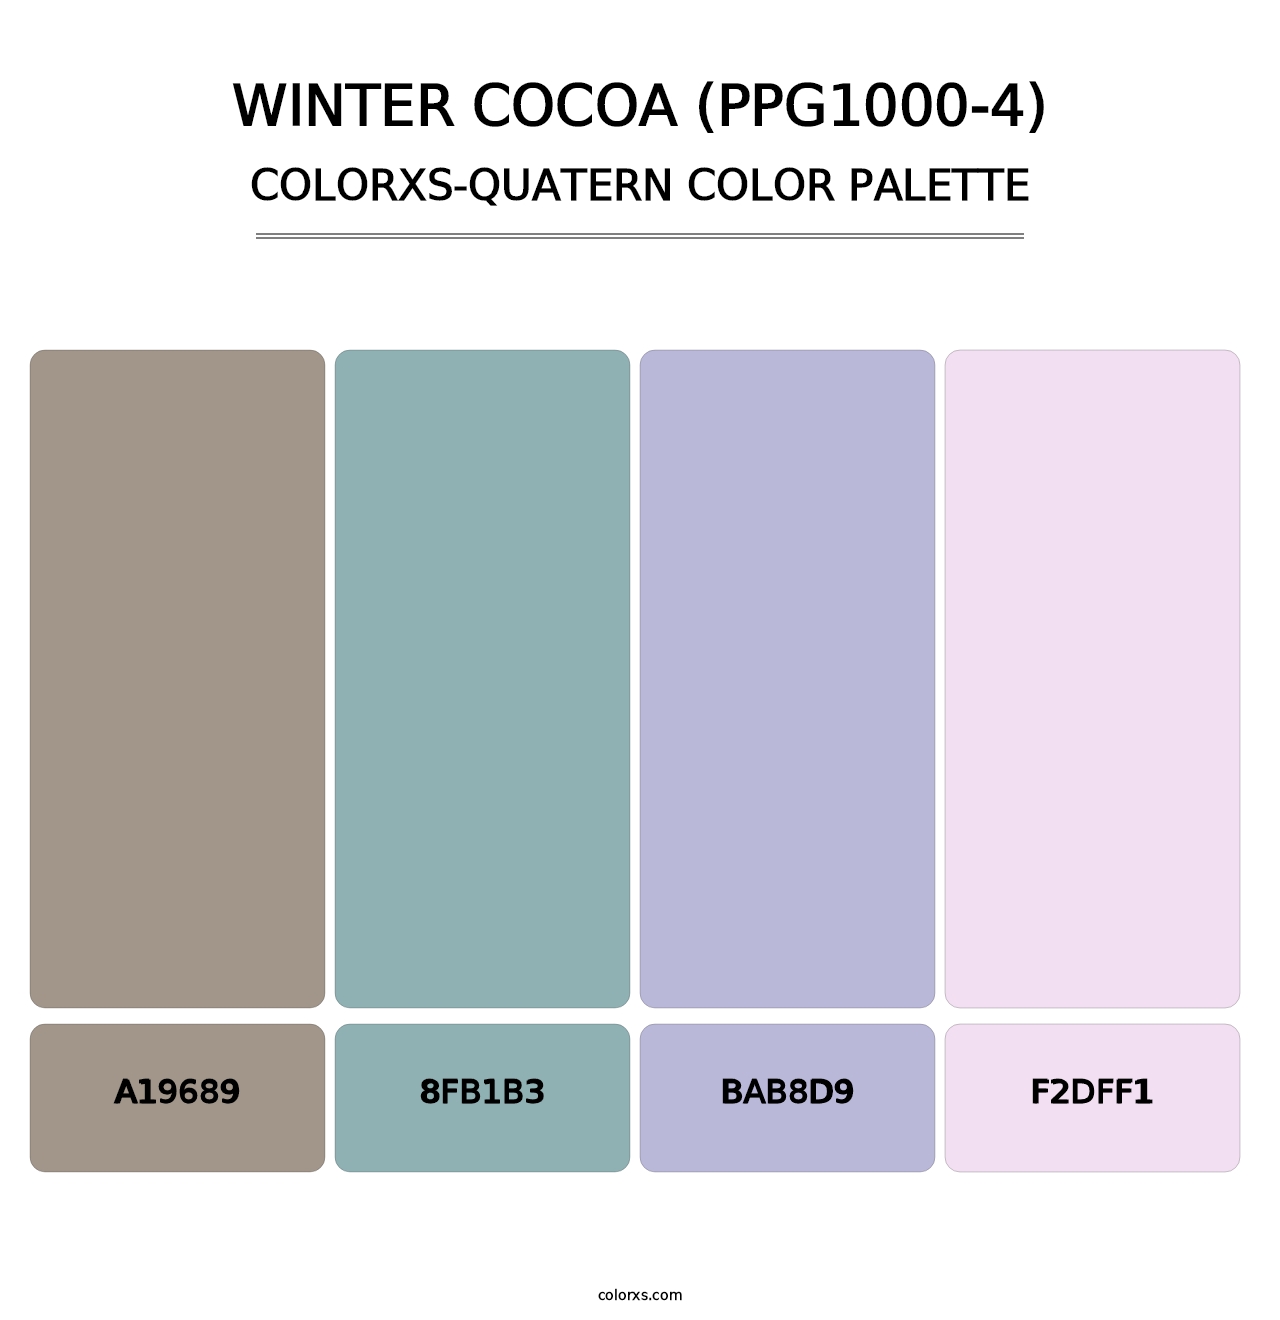 Winter Cocoa (PPG1000-4) - Colorxs Quatern Palette